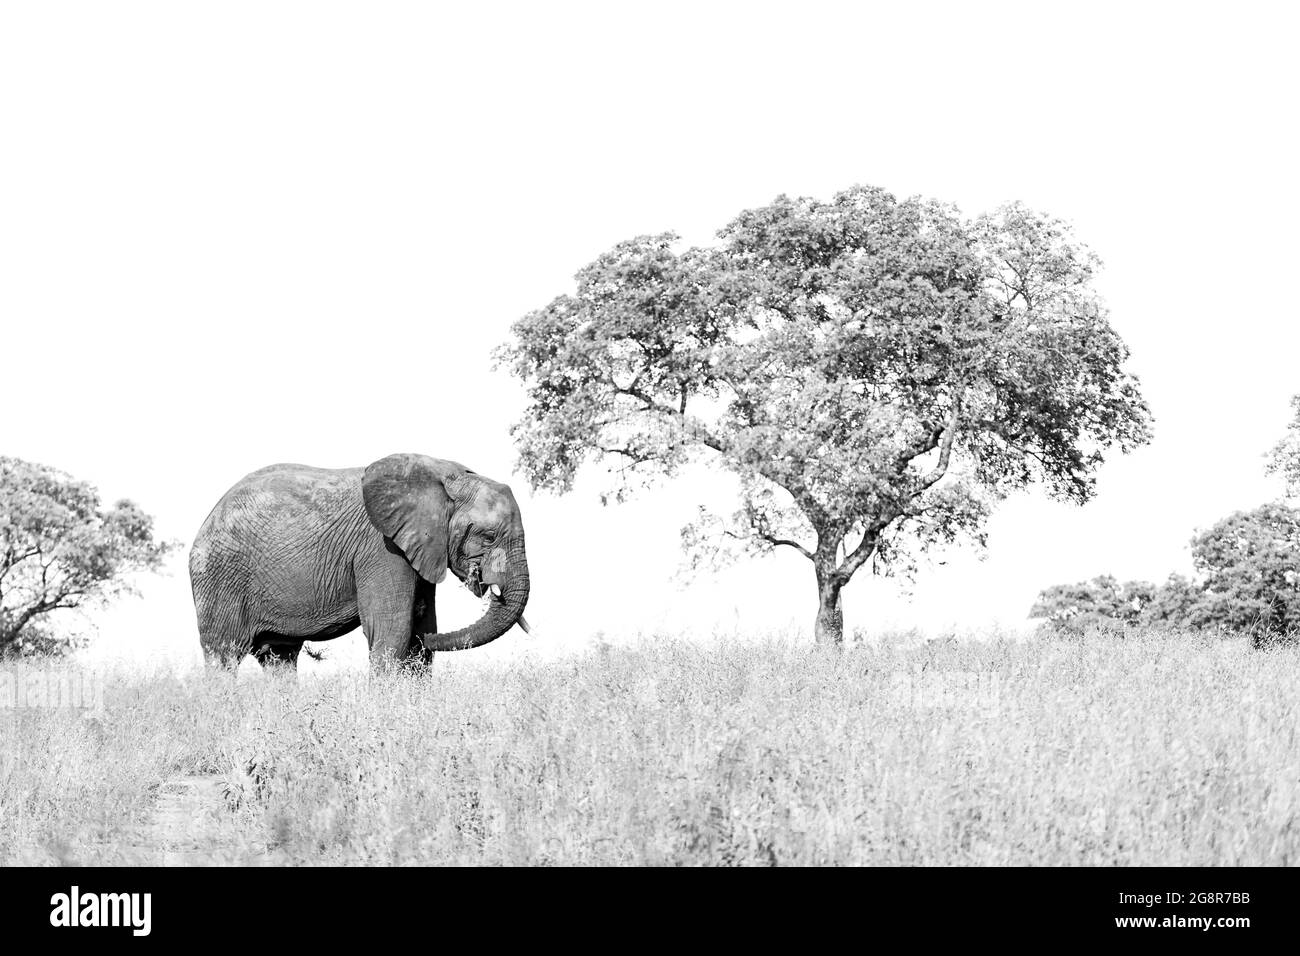 Un elefante, Loxodonta africana, si trova in una radura vicino ad un albero, profilo laterale in bianco e nero Foto Stock